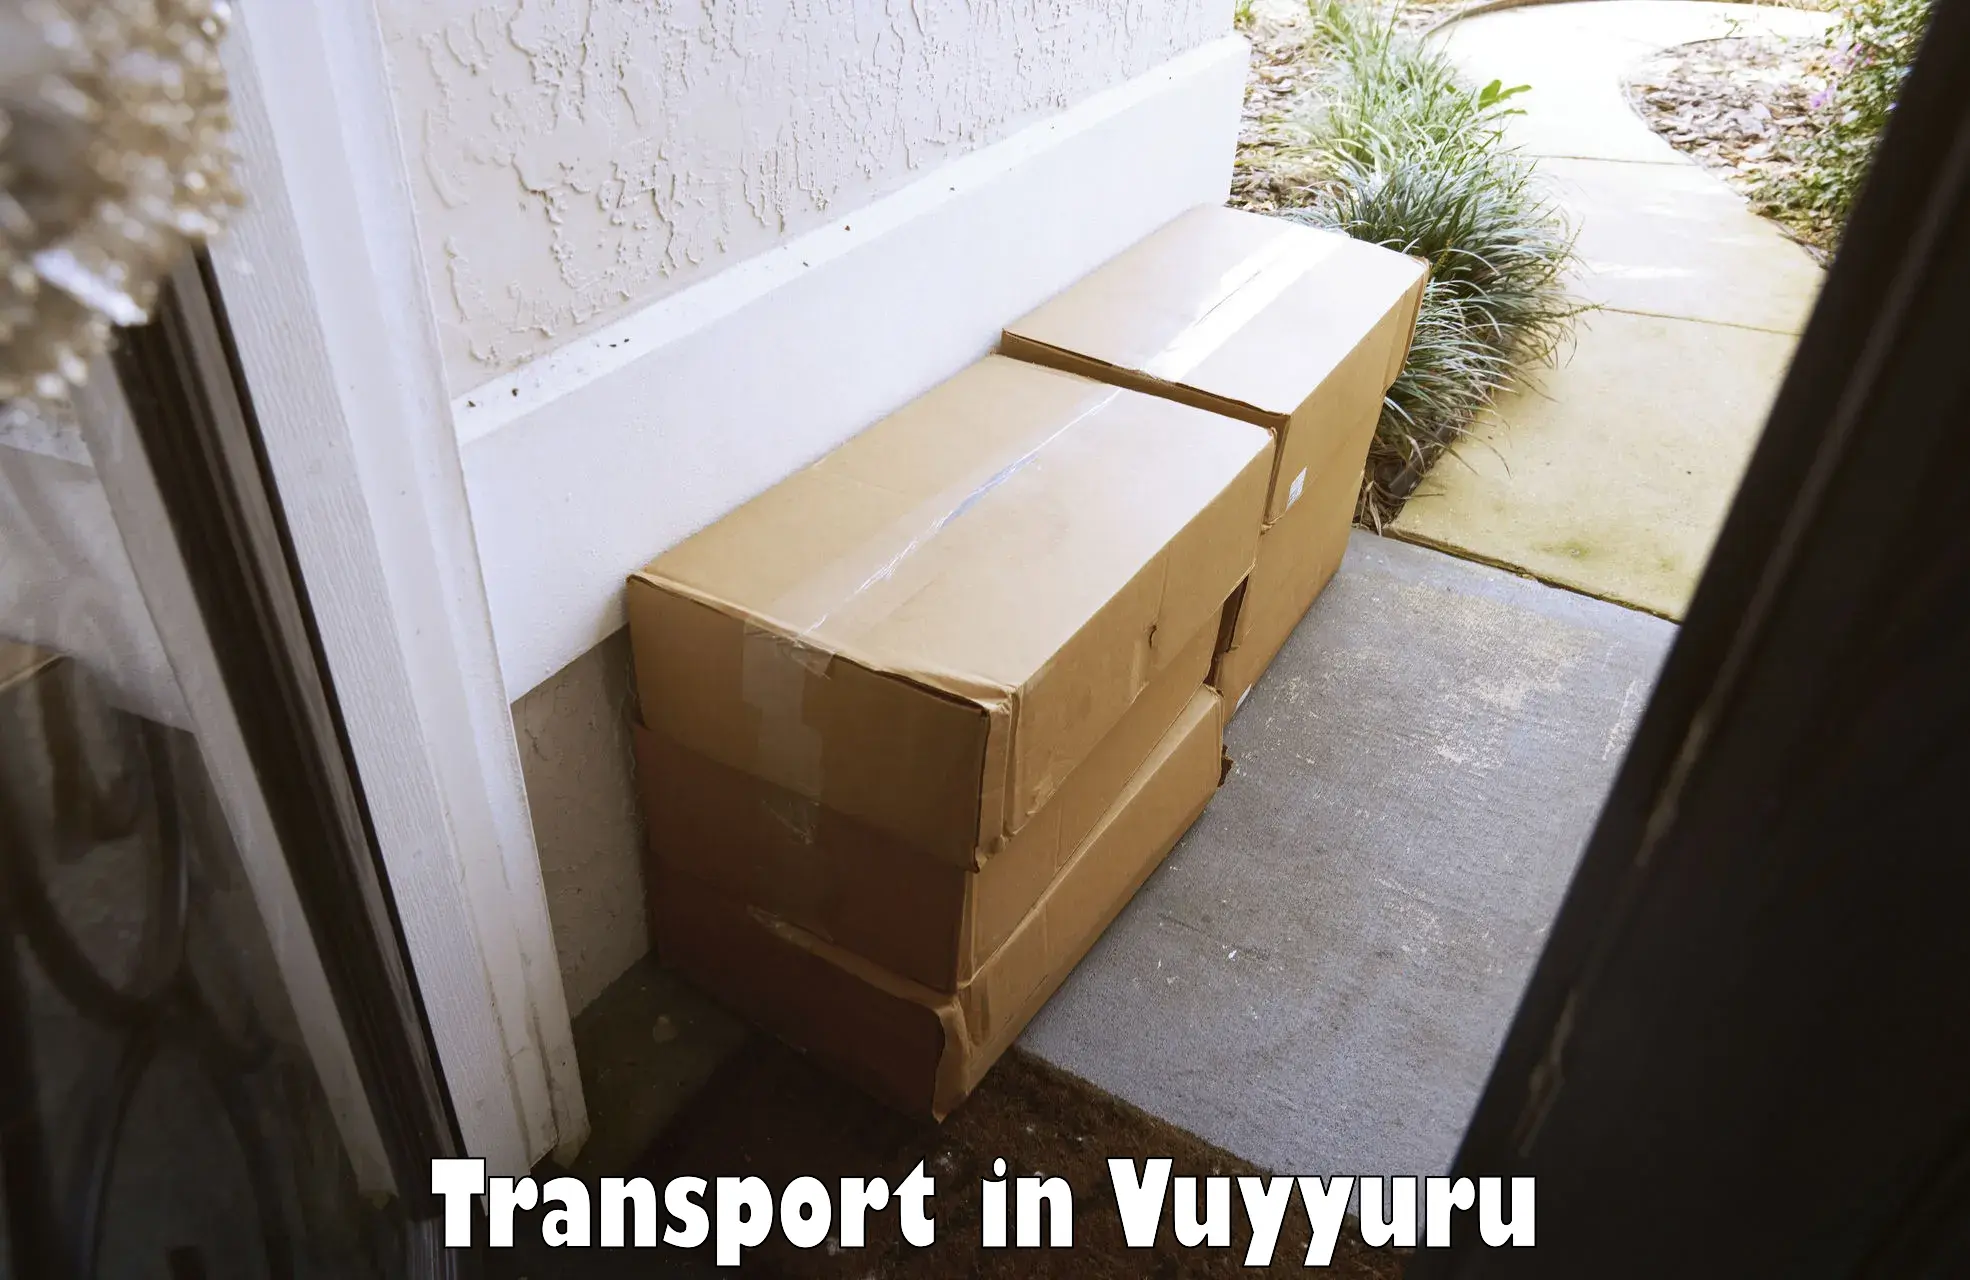 Transportation solution services in Vuyyuru